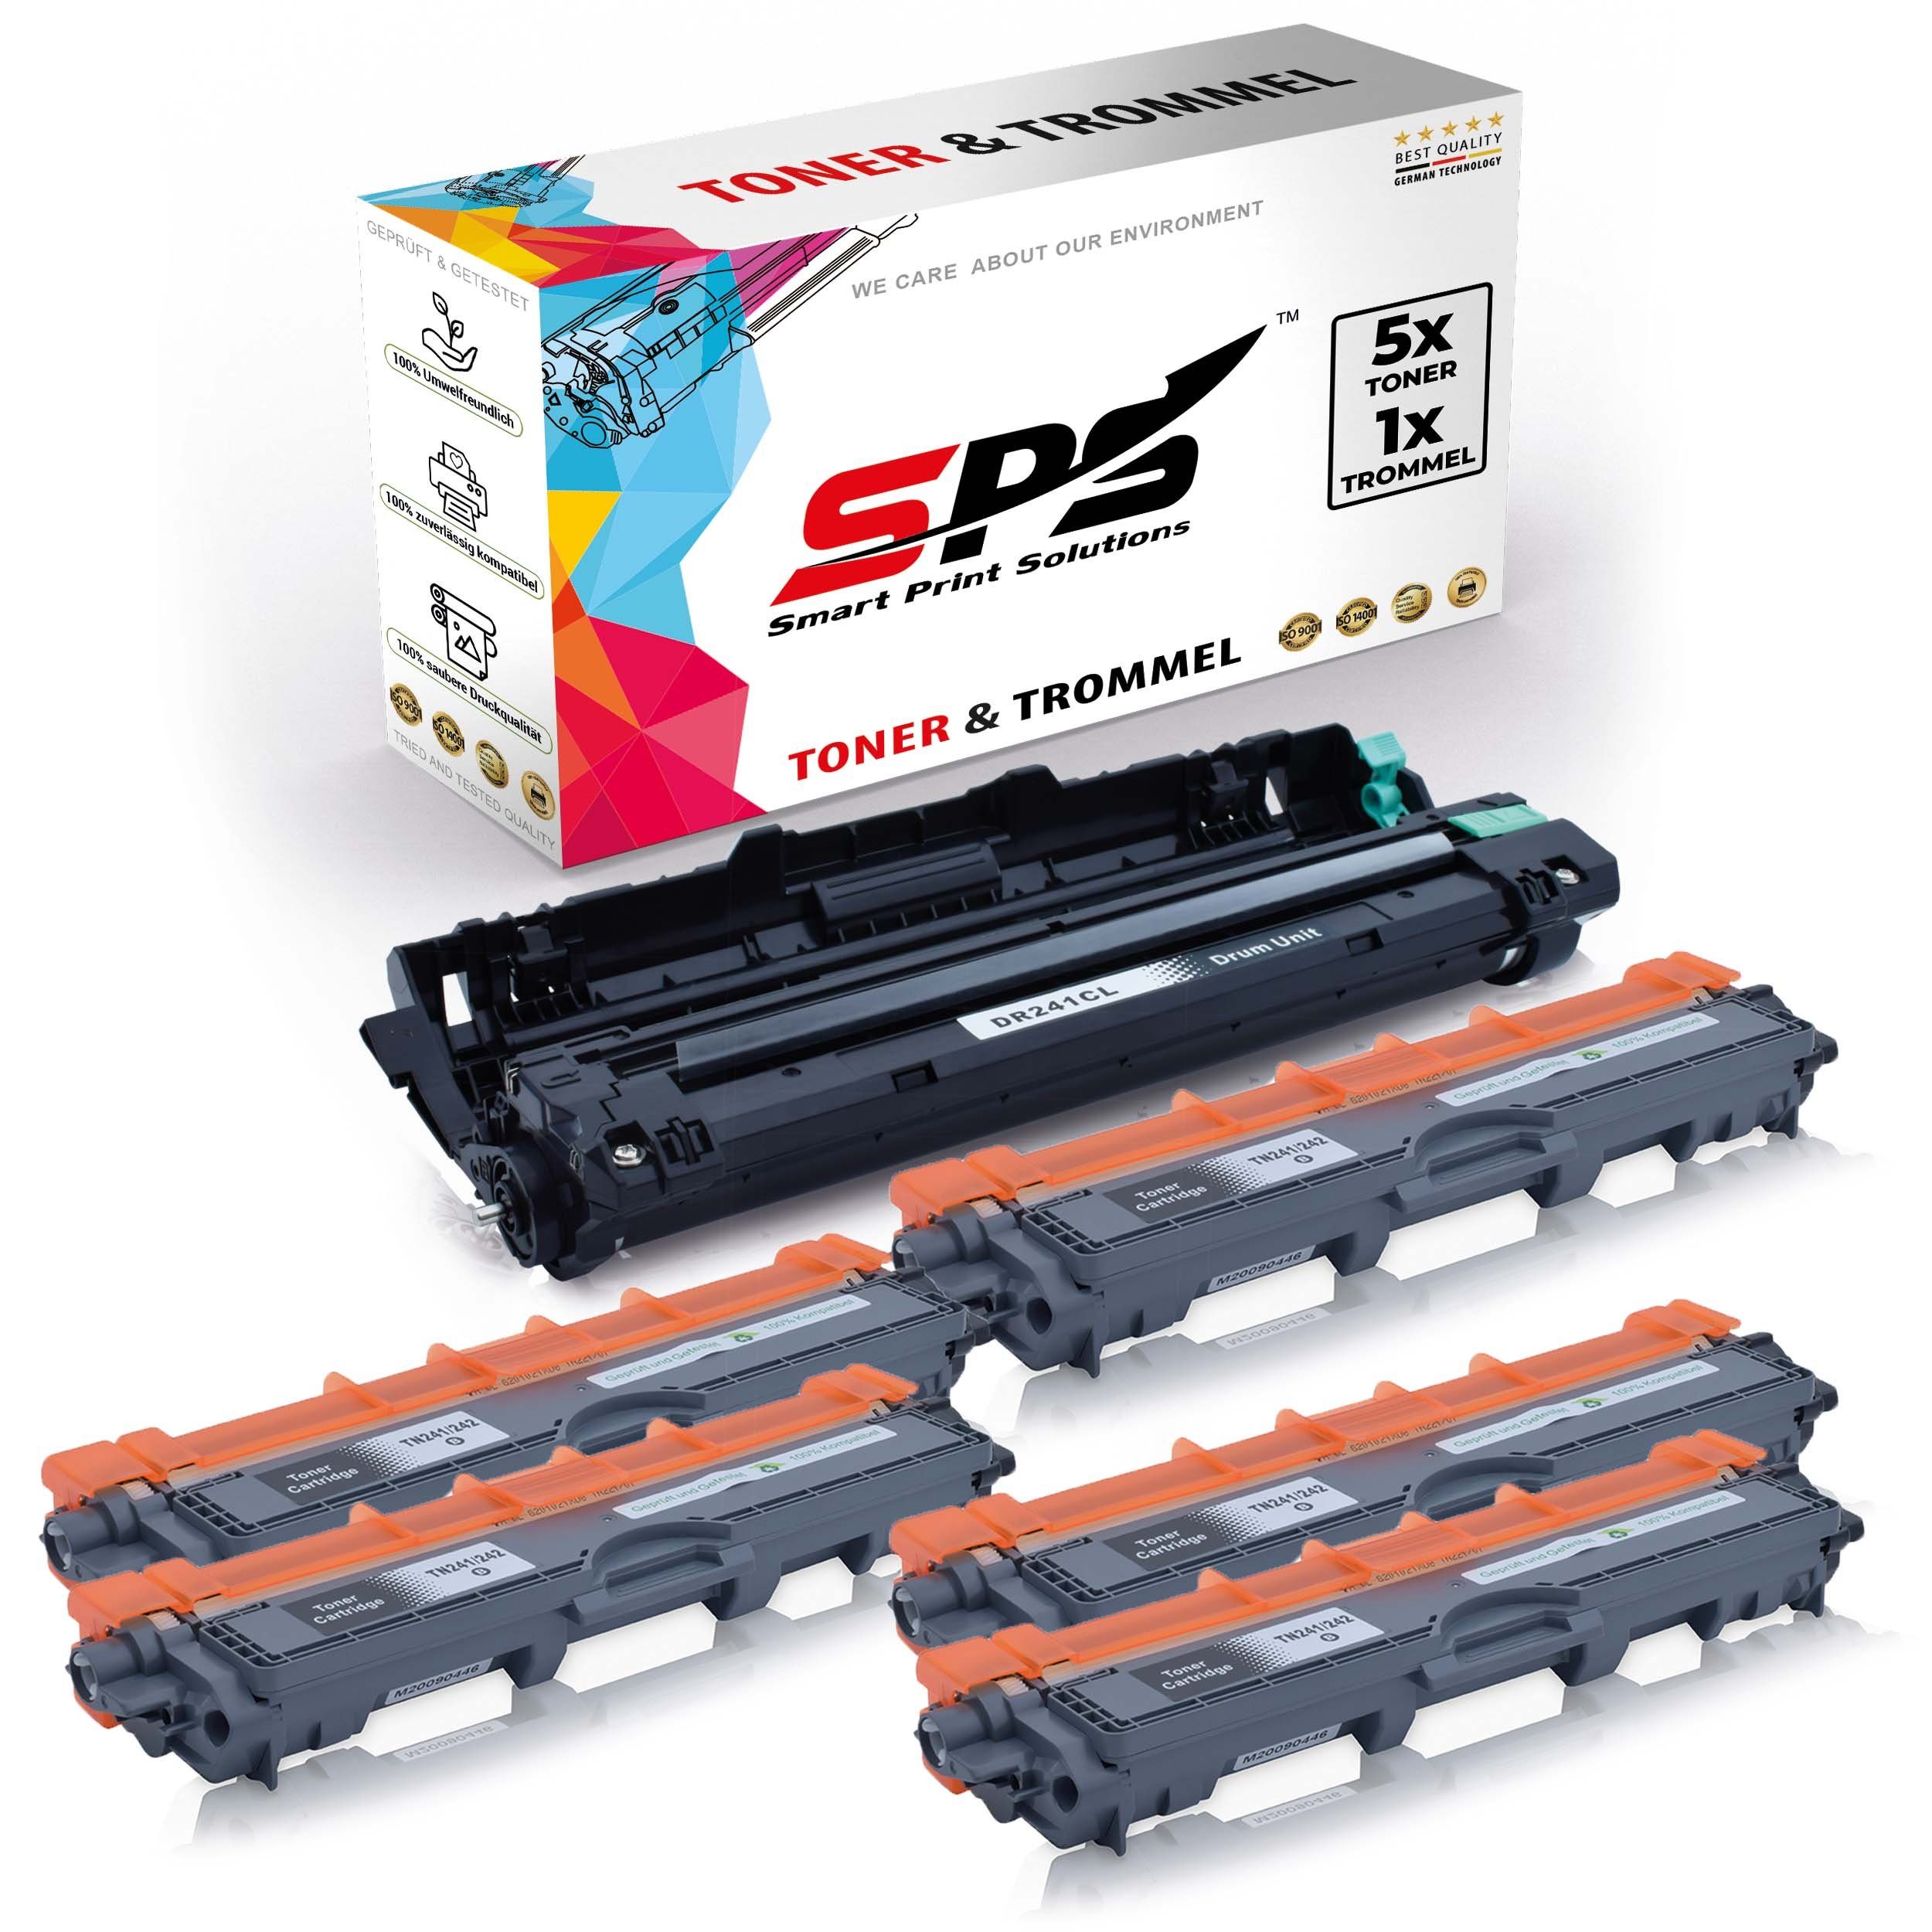 SPS Tonerkartusche Kompatibel für HL3170CDW (6er DR-241CL Pack) Brother TN-241BK